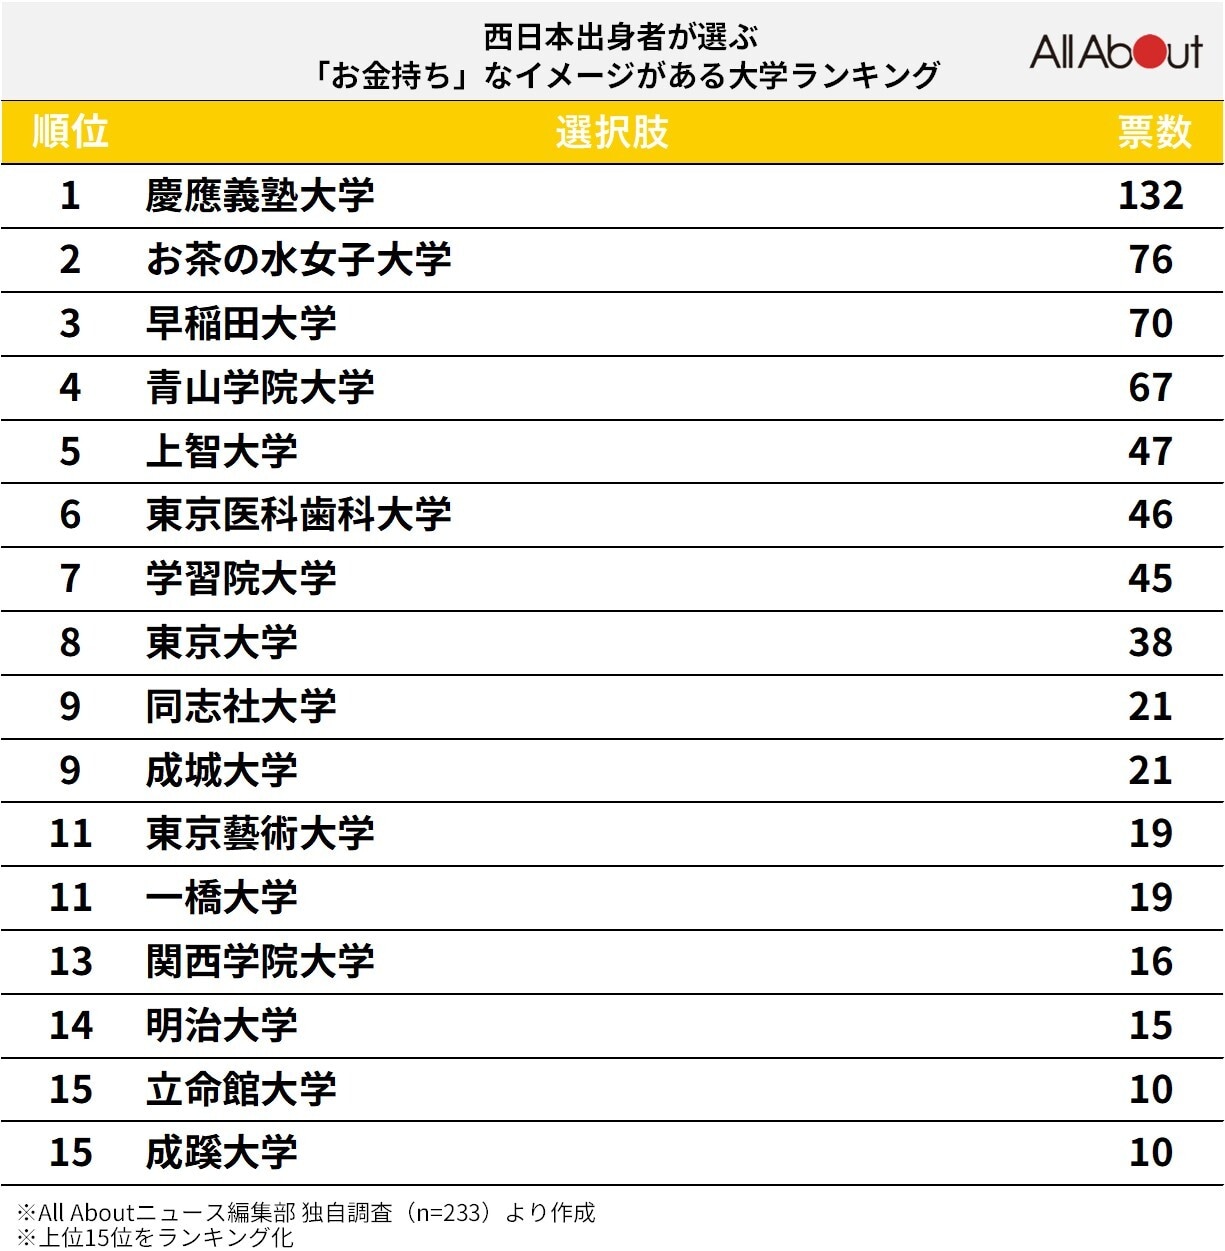 西日本出身者が選ぶ「お金持ち」なイメージがある大学ランキング